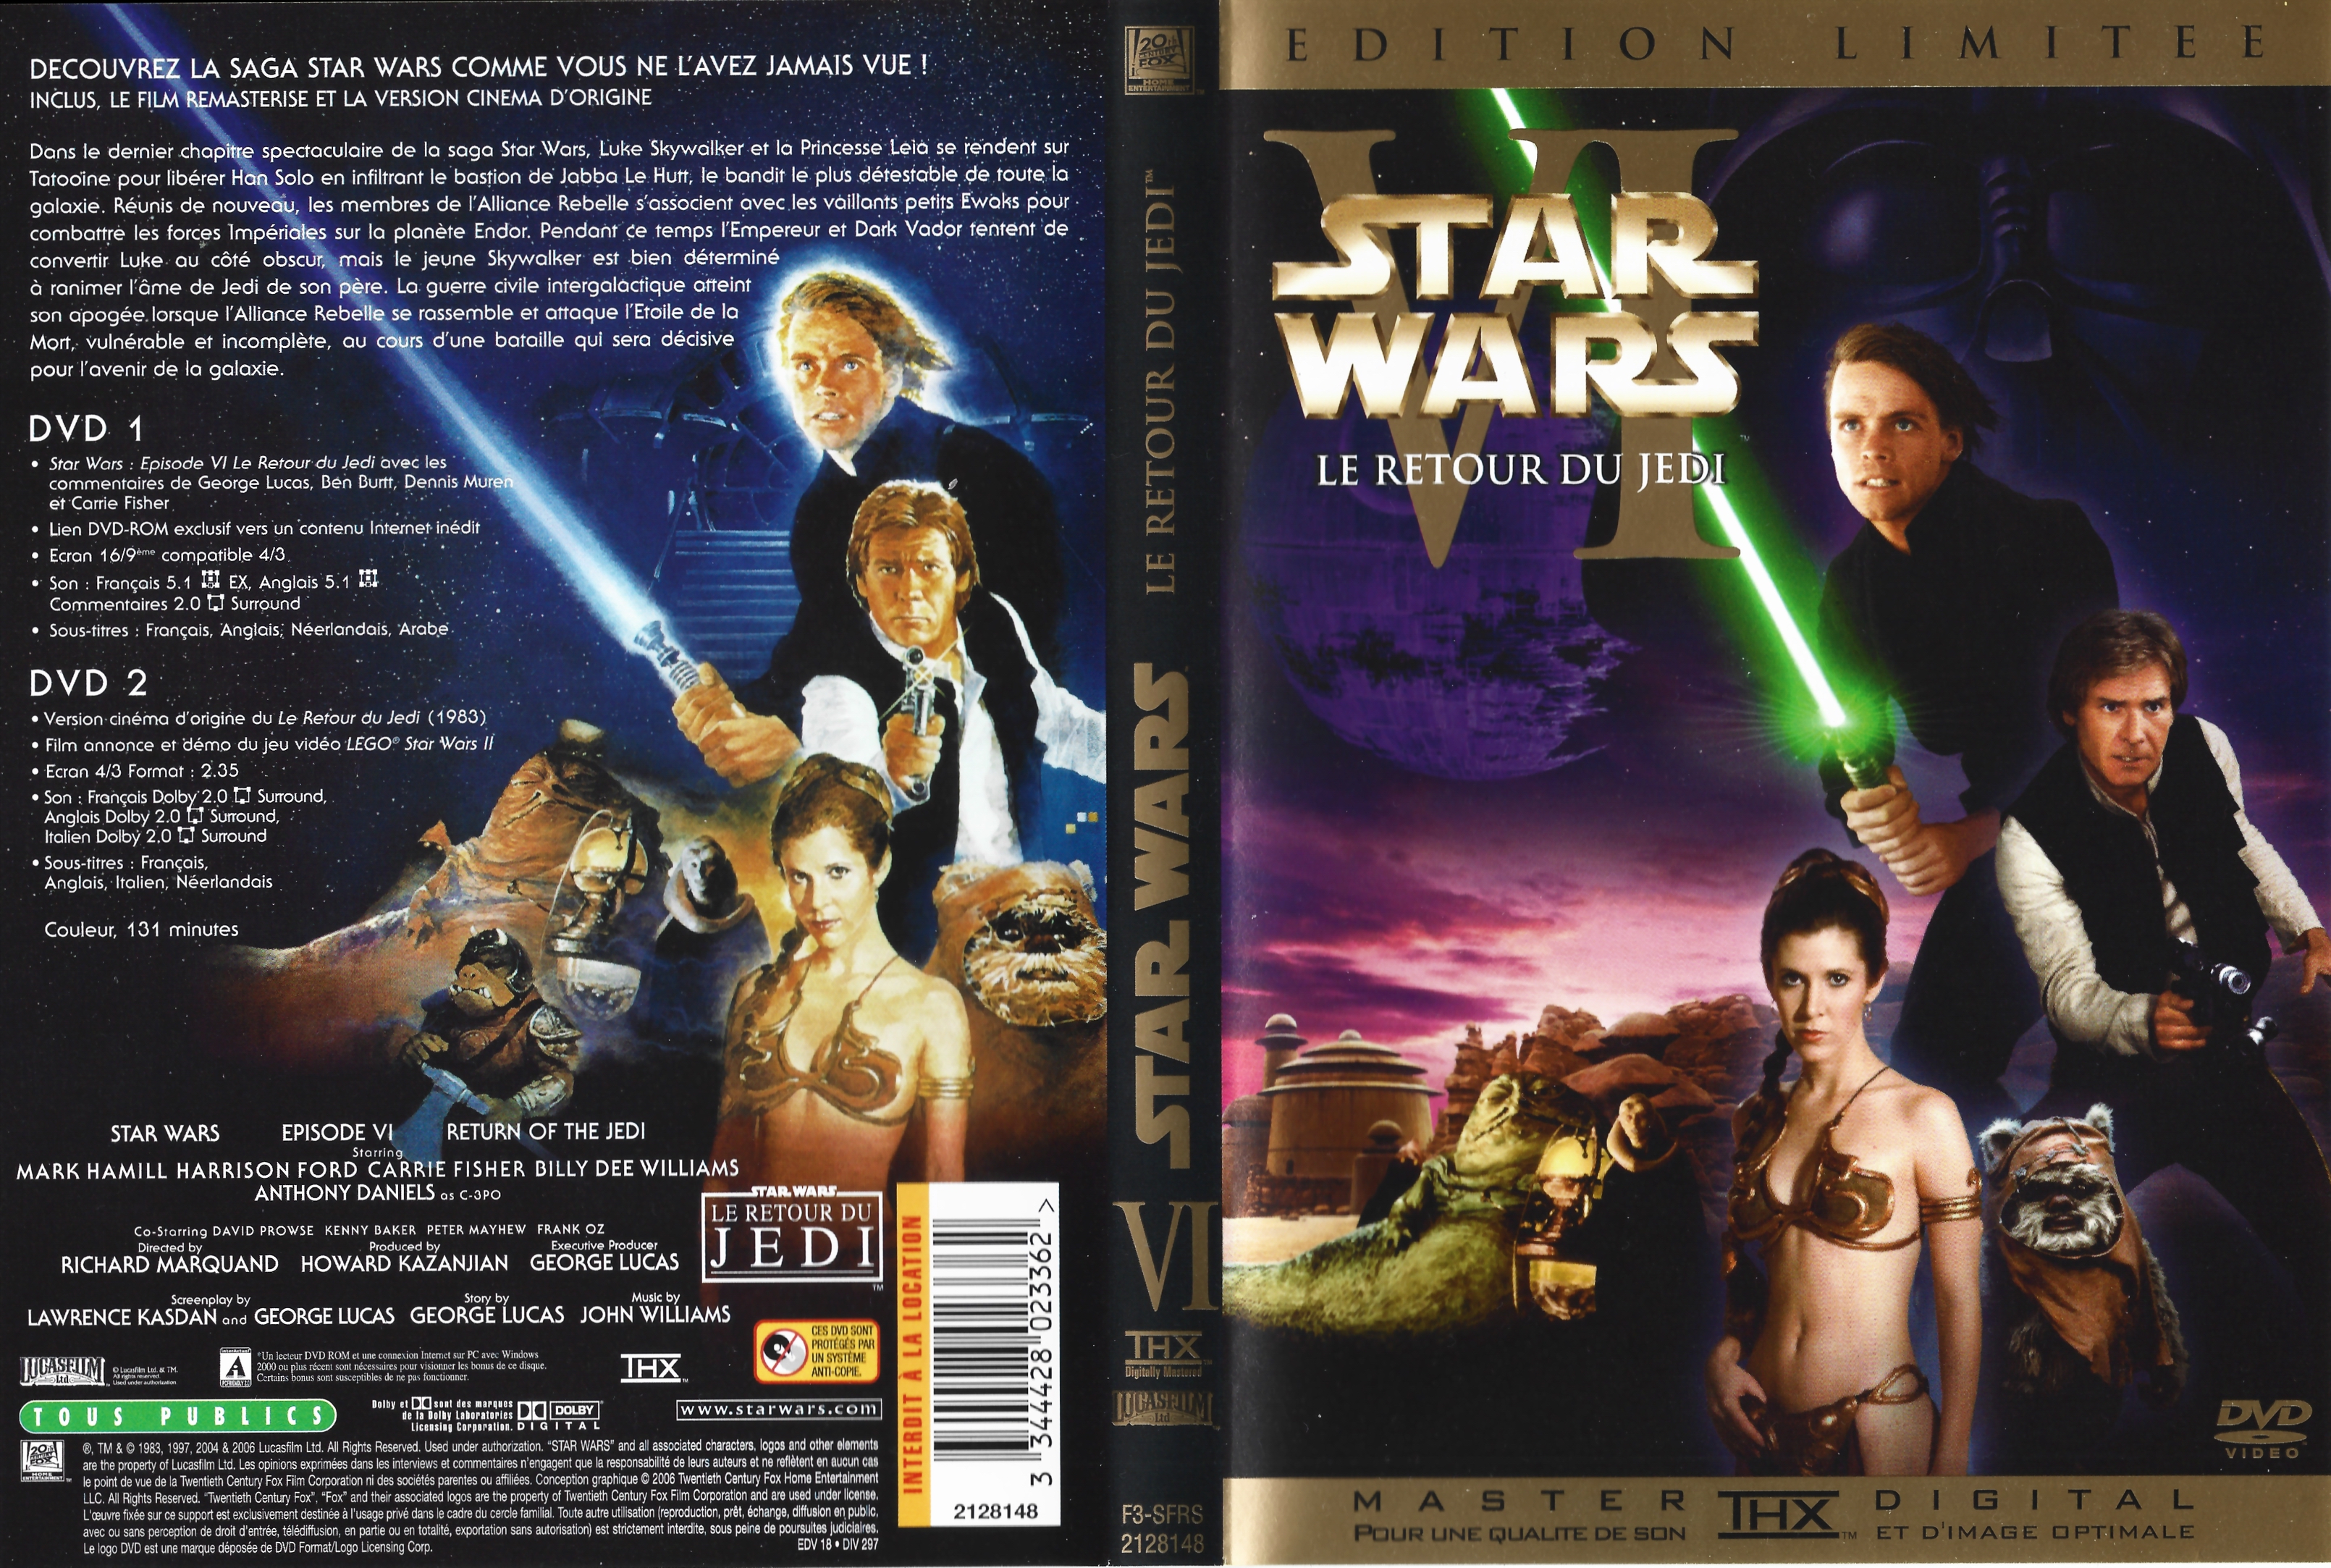 Jaquette DVD Star Wars Le retour du jedi v2